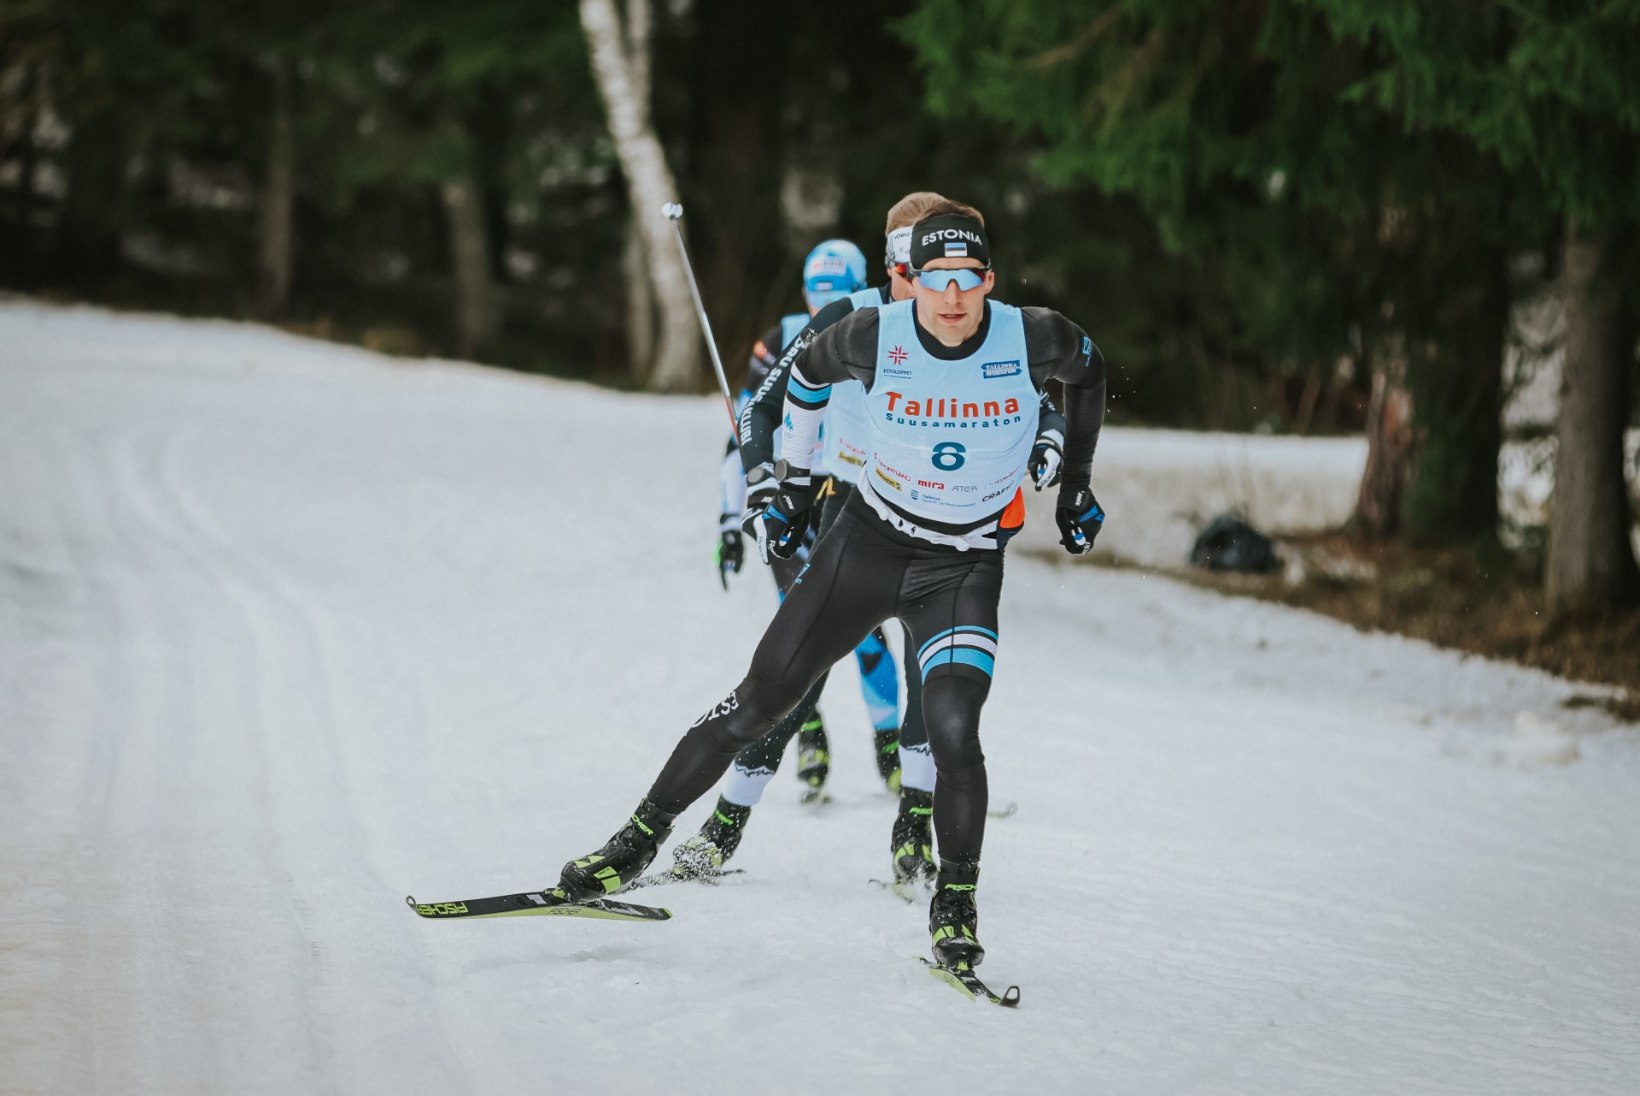 Määrdemeistriks kehastunud Kersti Kaljulaid pärast Tallinna maratoni: „Olen väga uhke.“